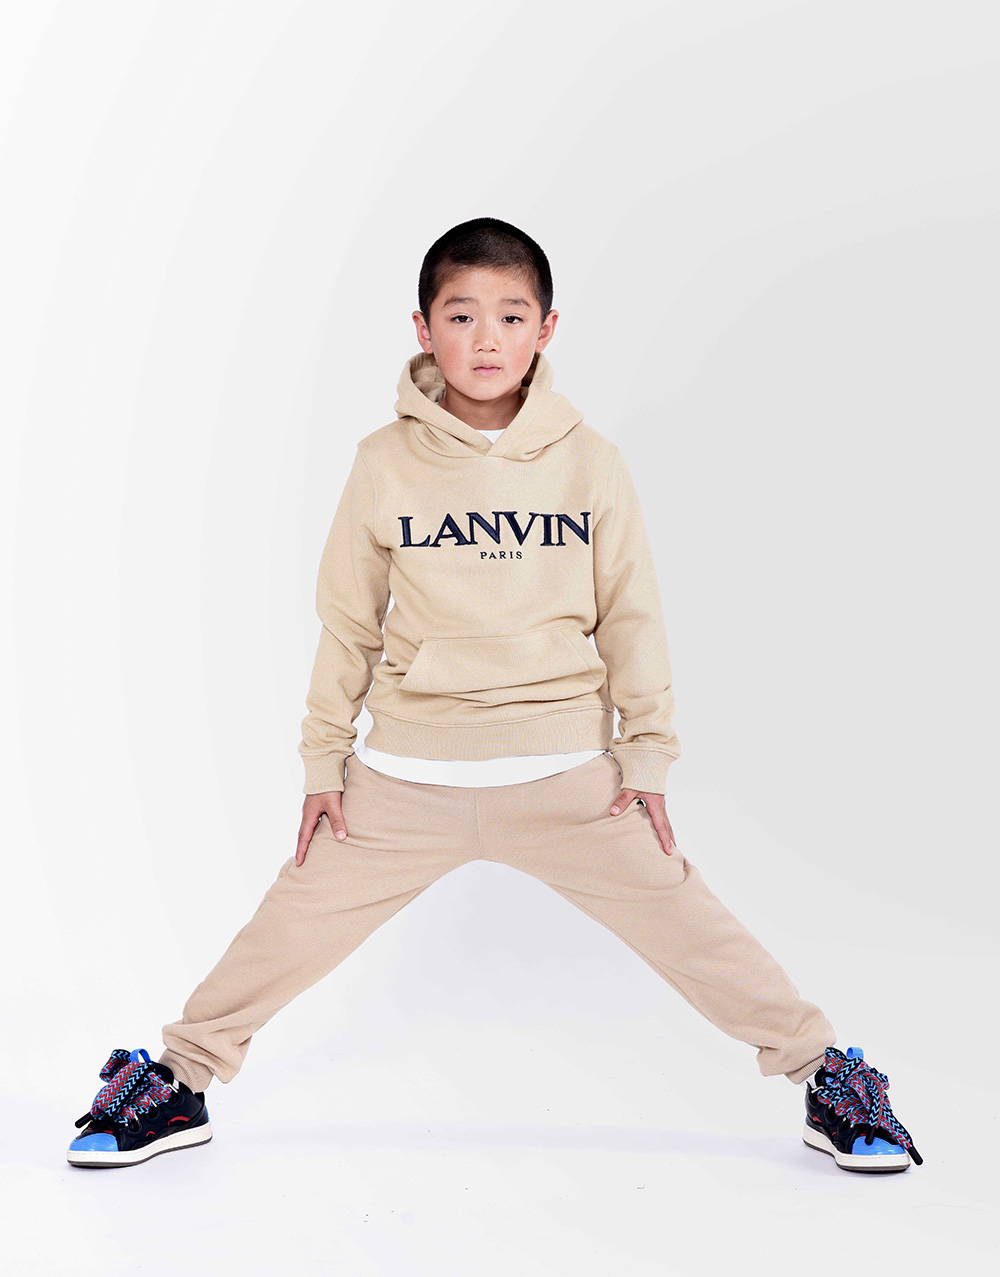 beige jogging suit for boys by Lanvin